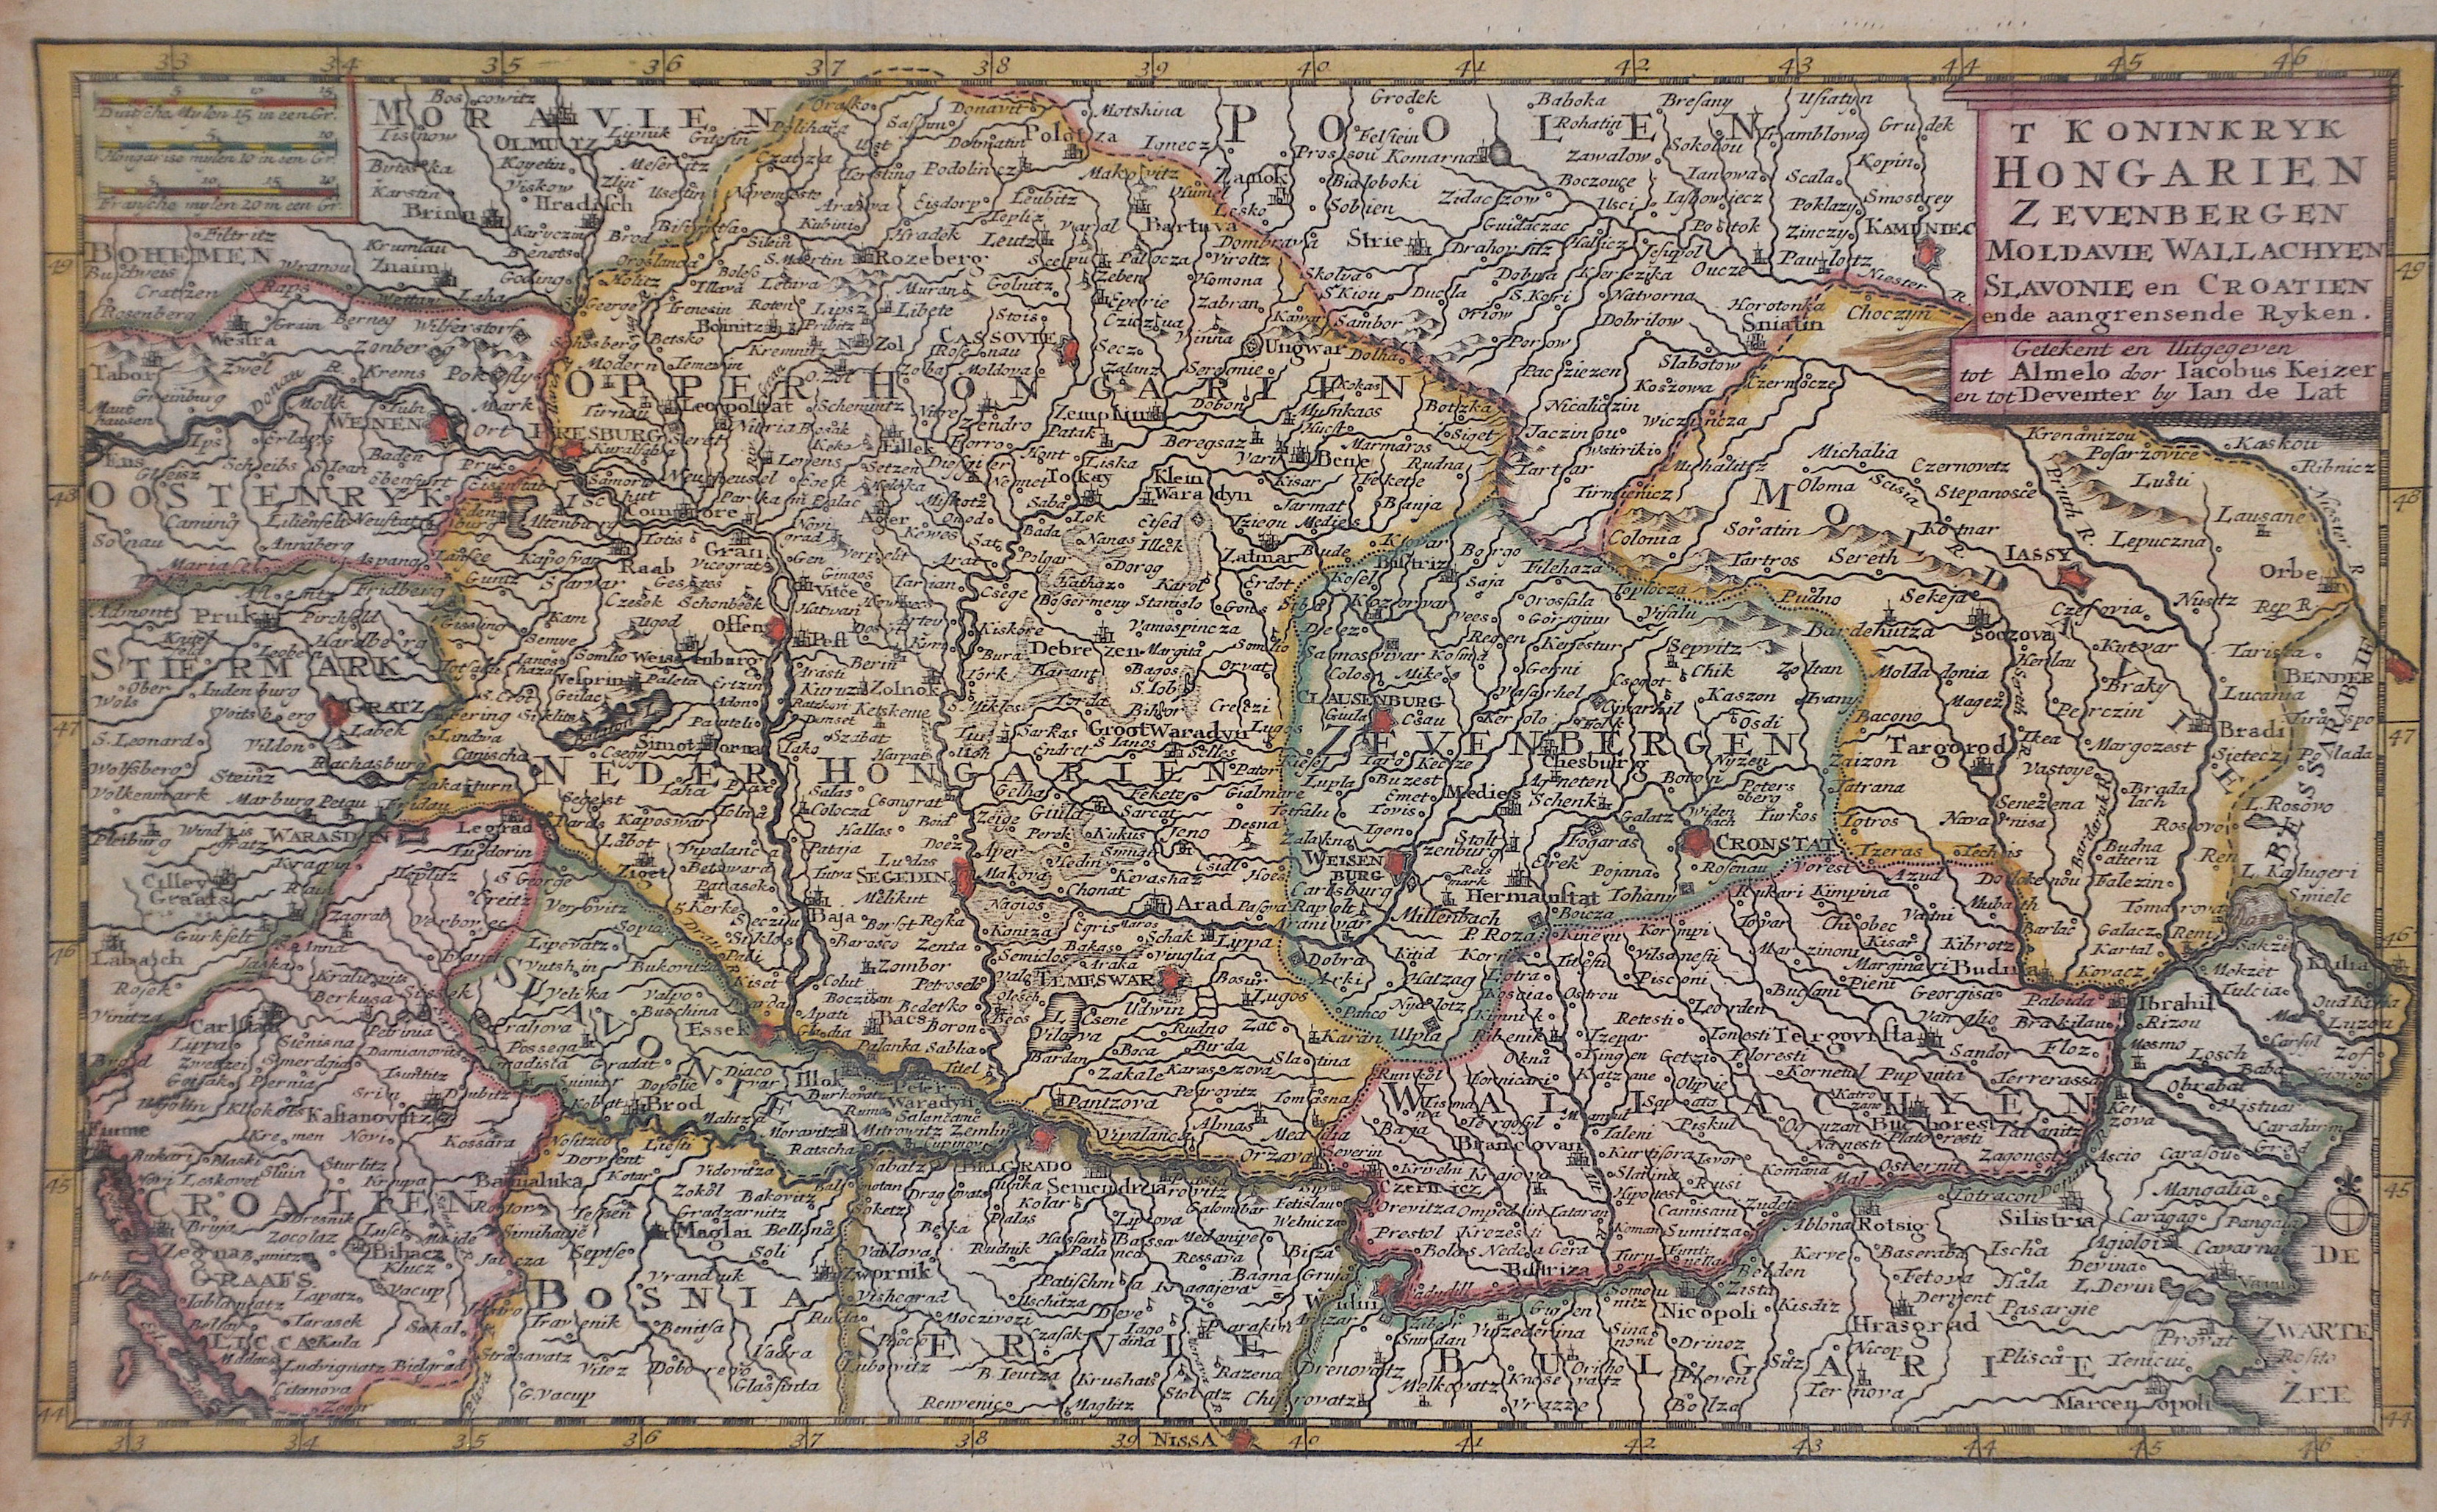 Lat, de  T Koninkryk Hongarien Zevenbergen Moldavie Wallachyen Slavonie en Croatien en de aangrensende Ryken.